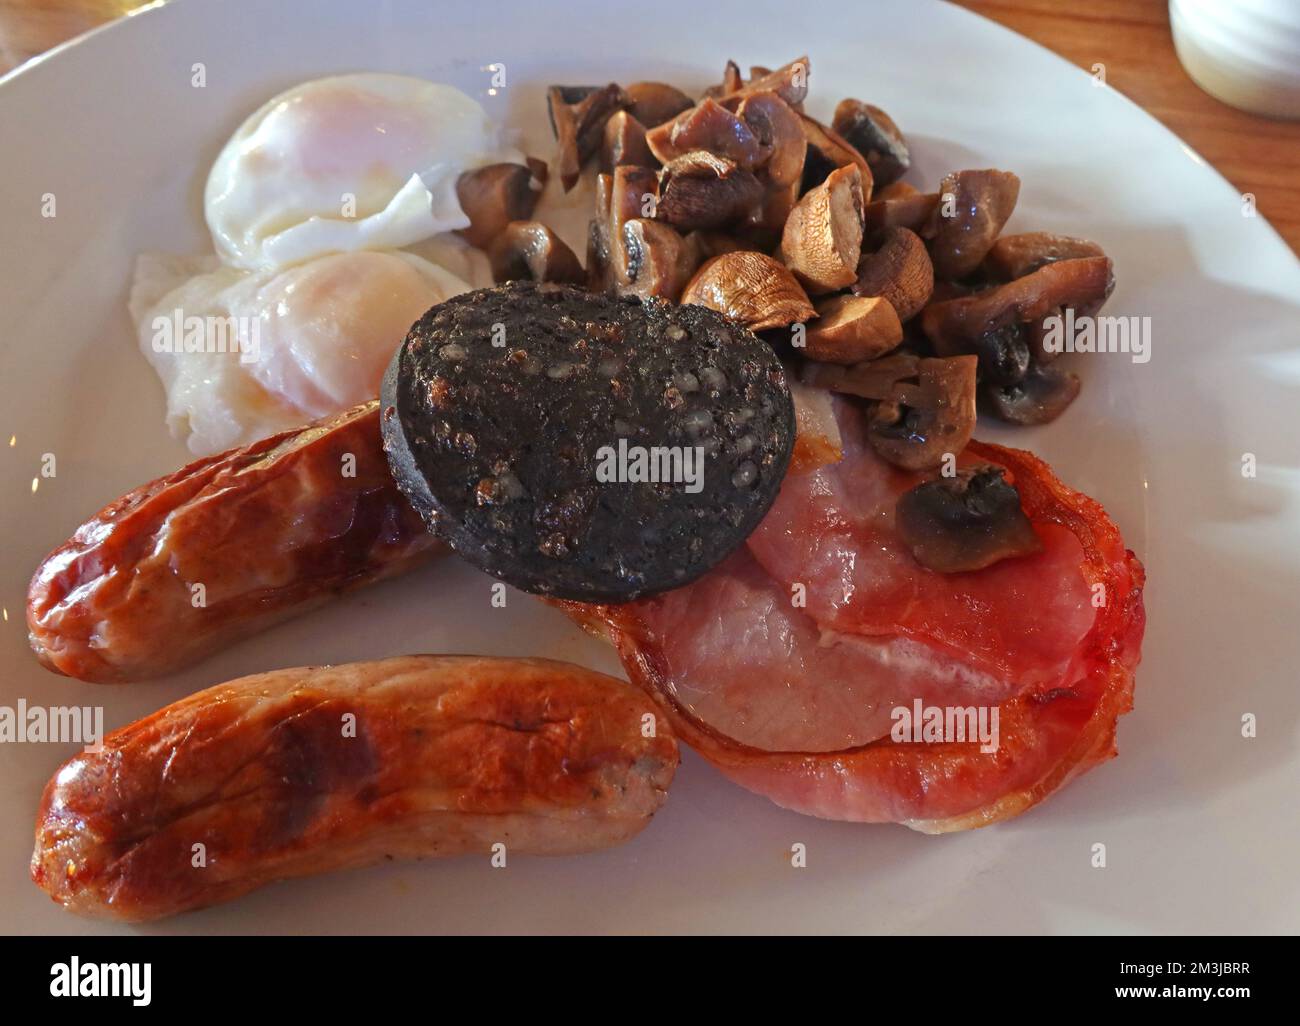 Colazione completa fritta, funghi, pancetta, salsicce, uova in camicia, pudding nero, su un piatto Foto Stock